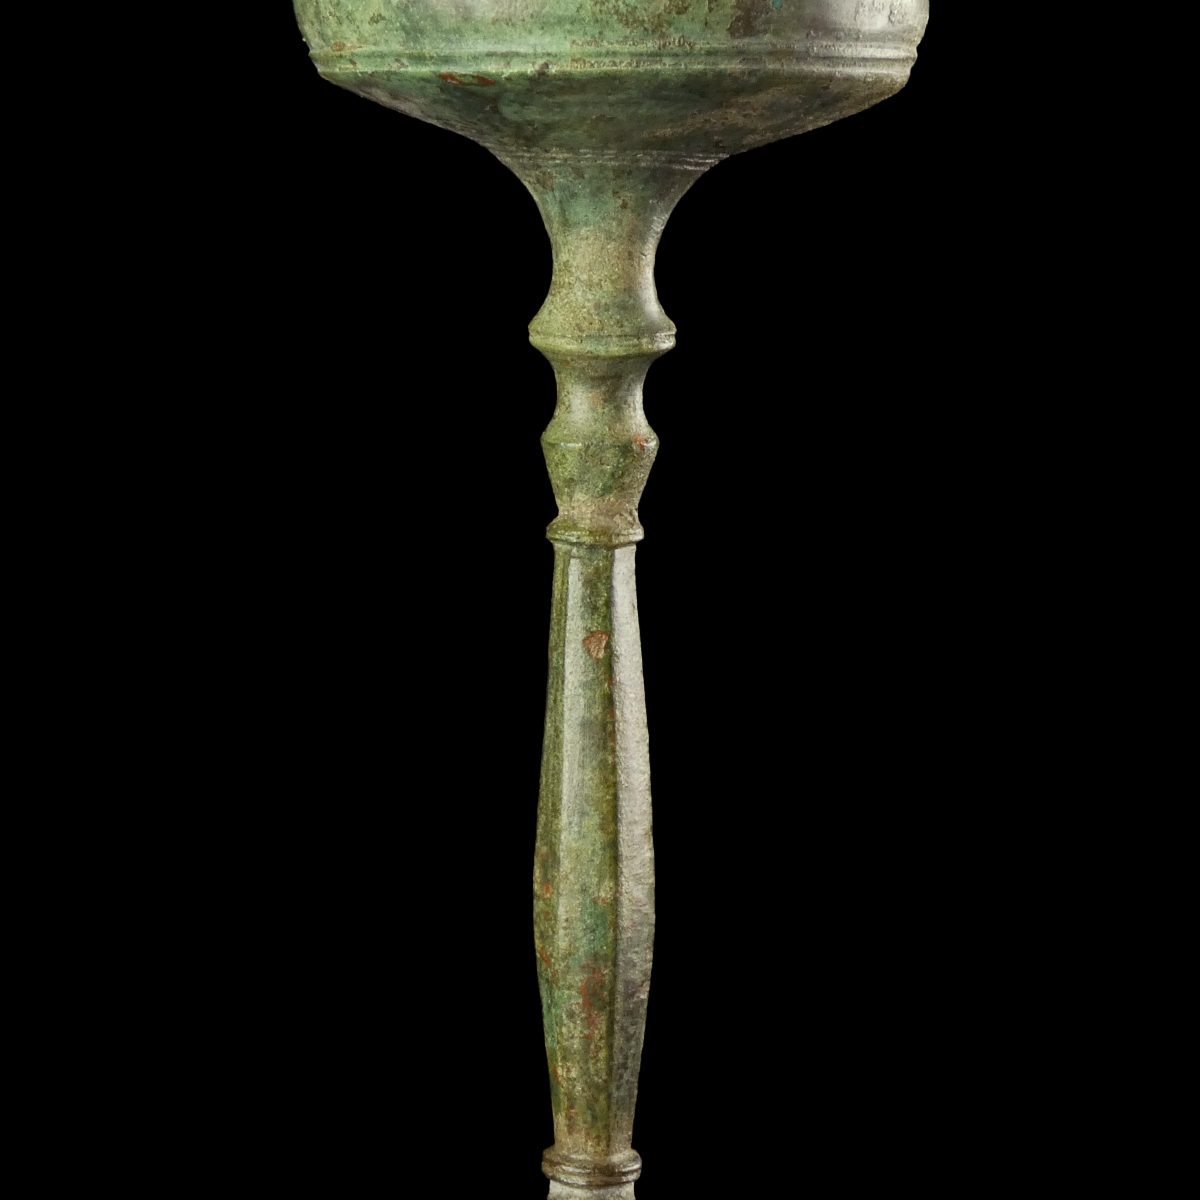 Late Roman - early Byzantine bronze Candlestick - Tripod